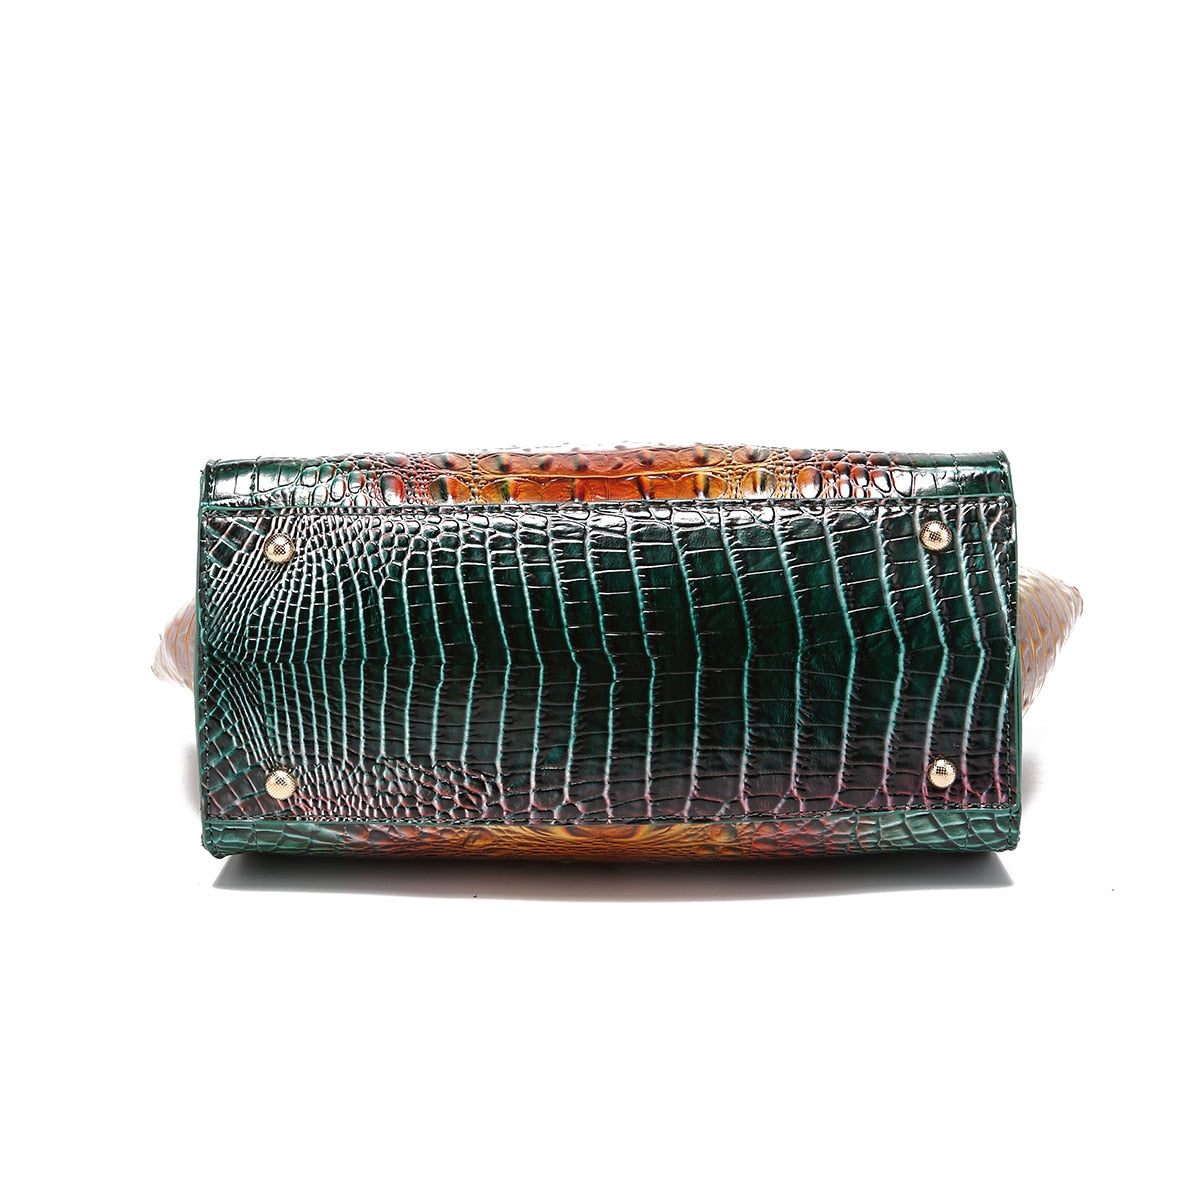 TEEK - Ombre Double RepStyle Embossed Handbag  theteekdotcom   